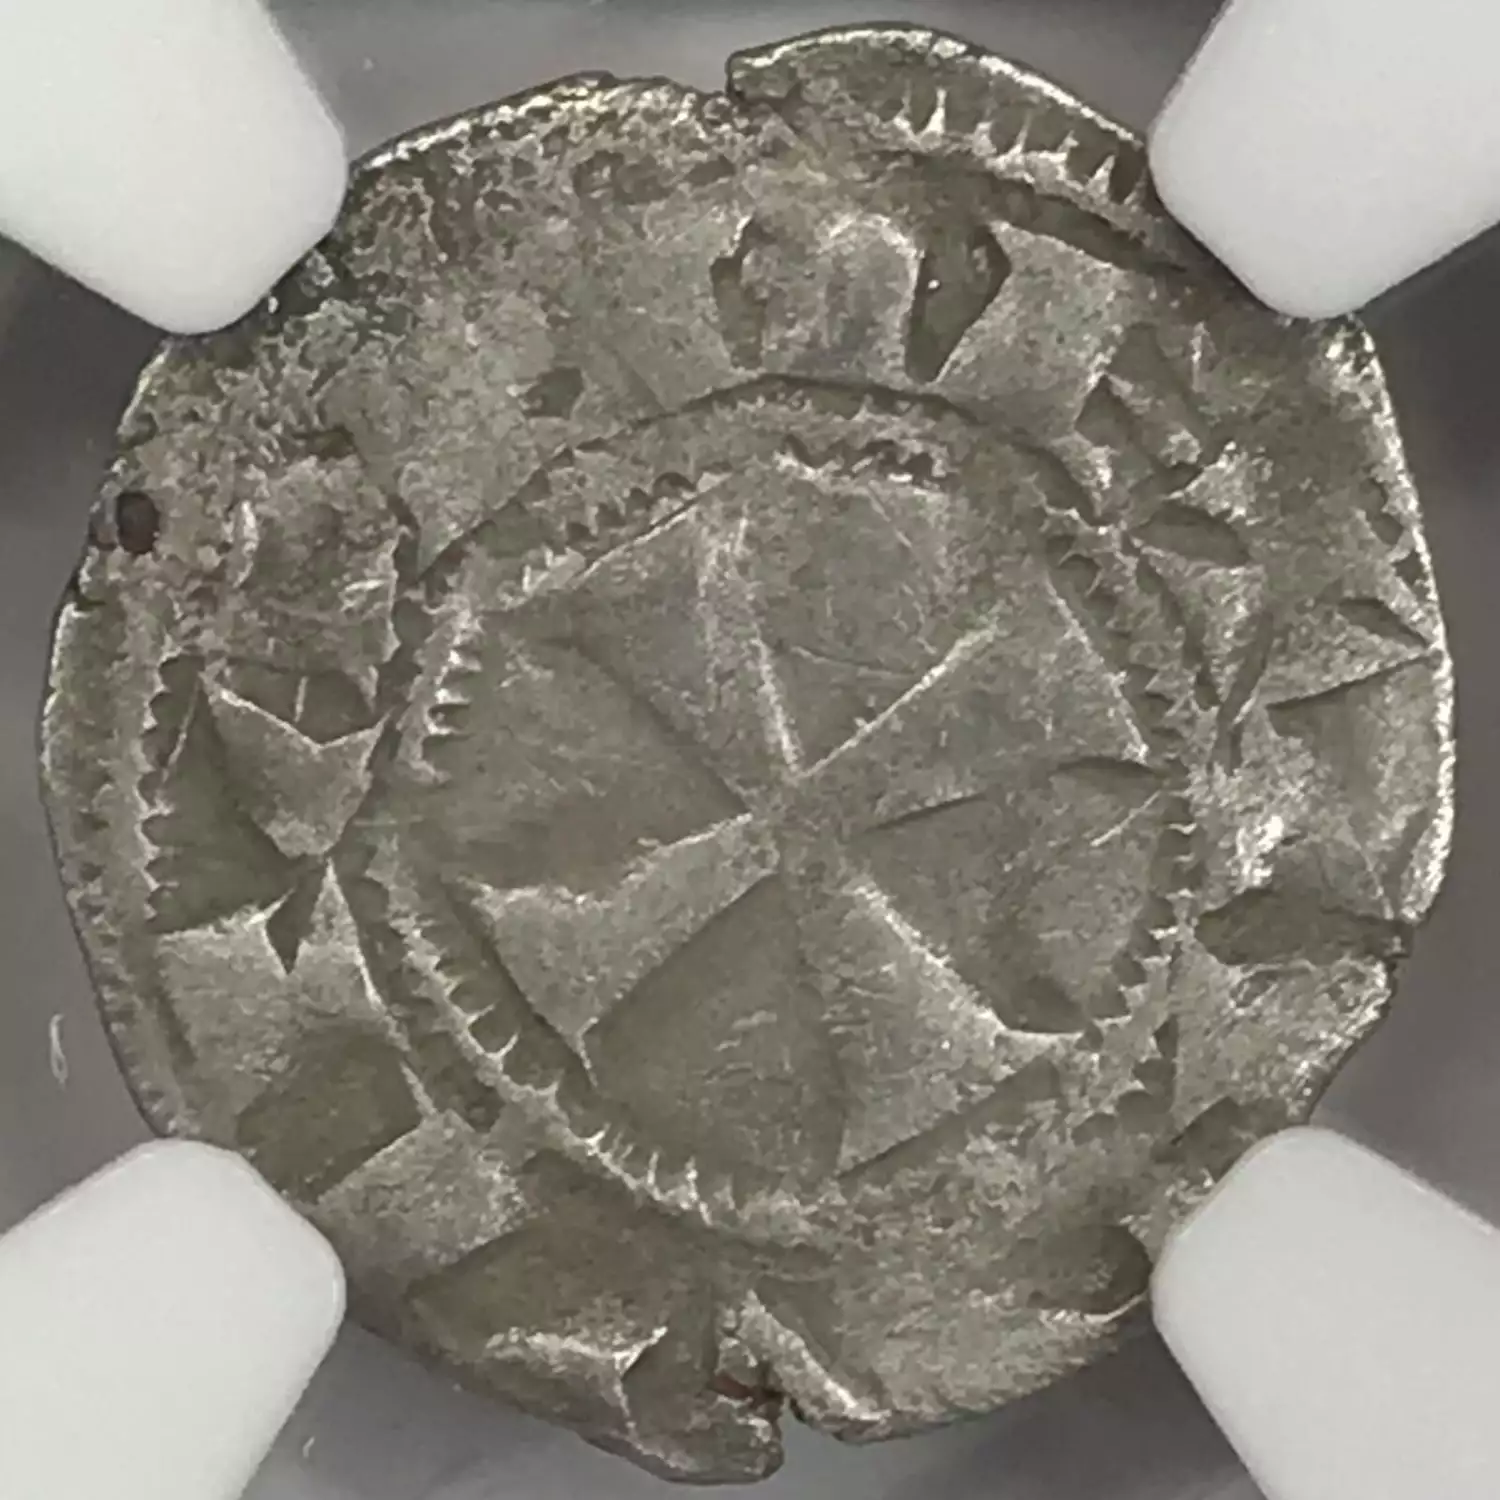 Medieval Coin - European (3)